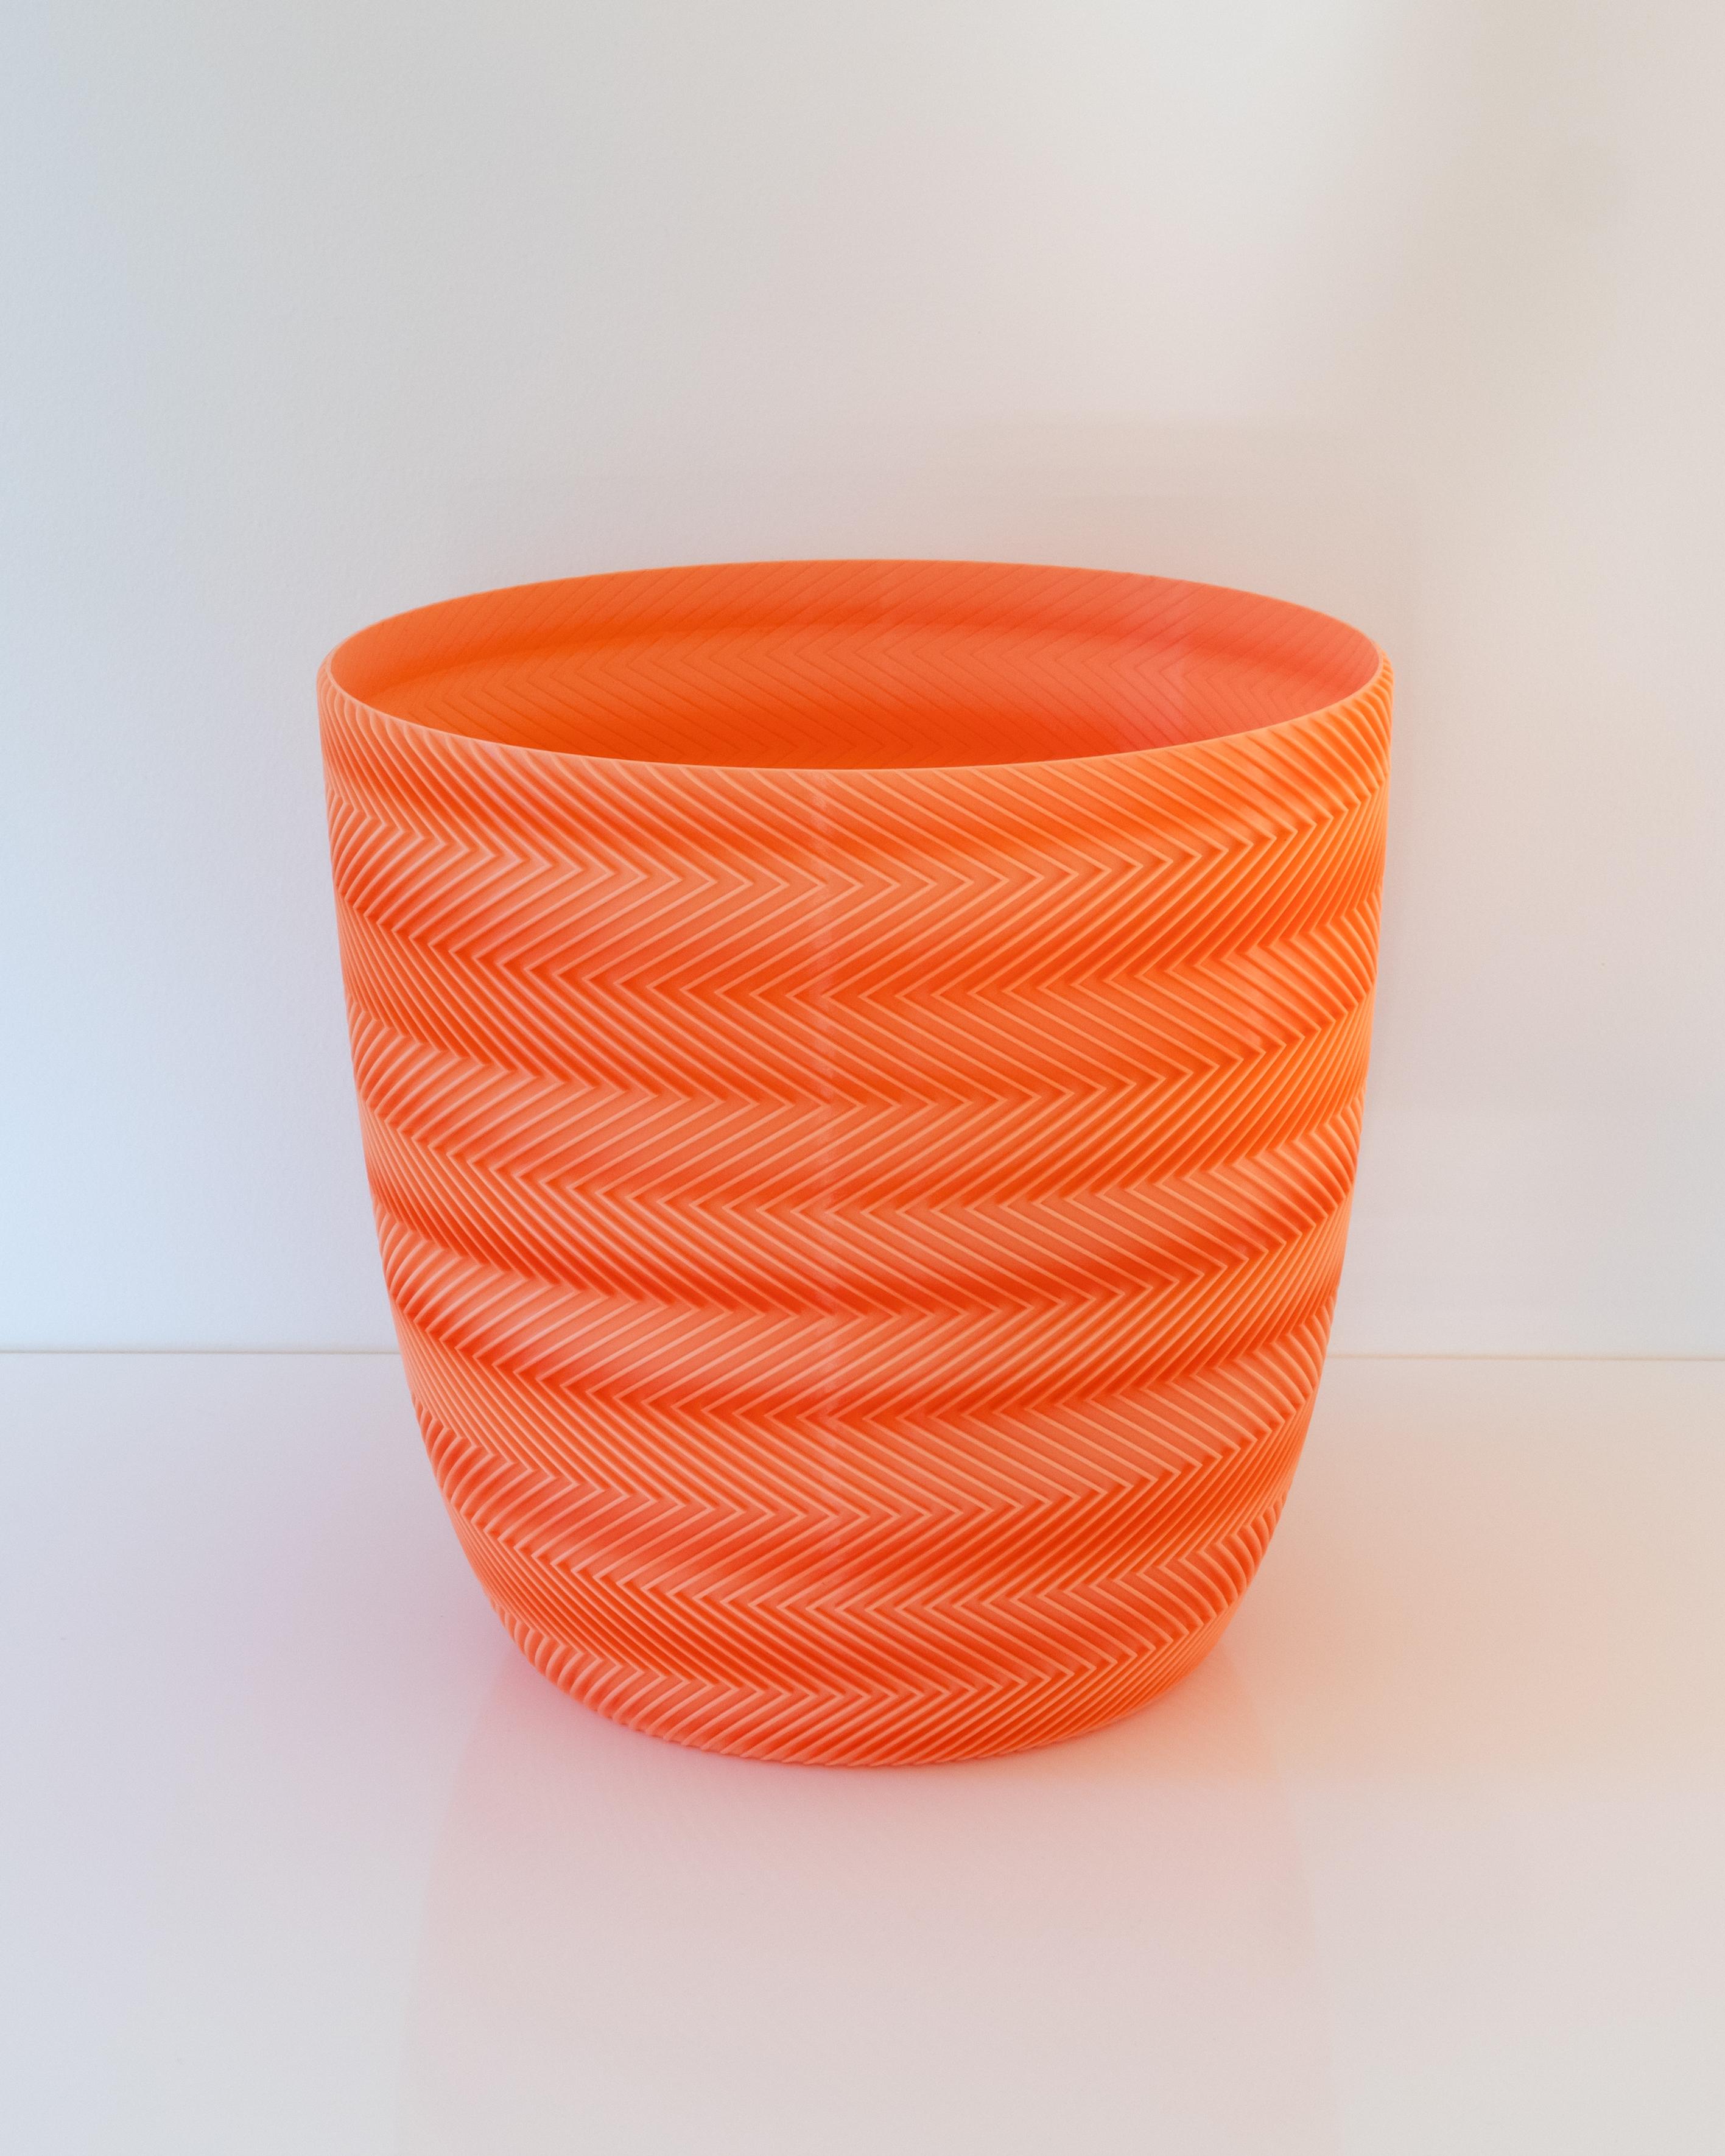 VESUVIUS Pot 001 // Large Vase Mode Planter 3d model